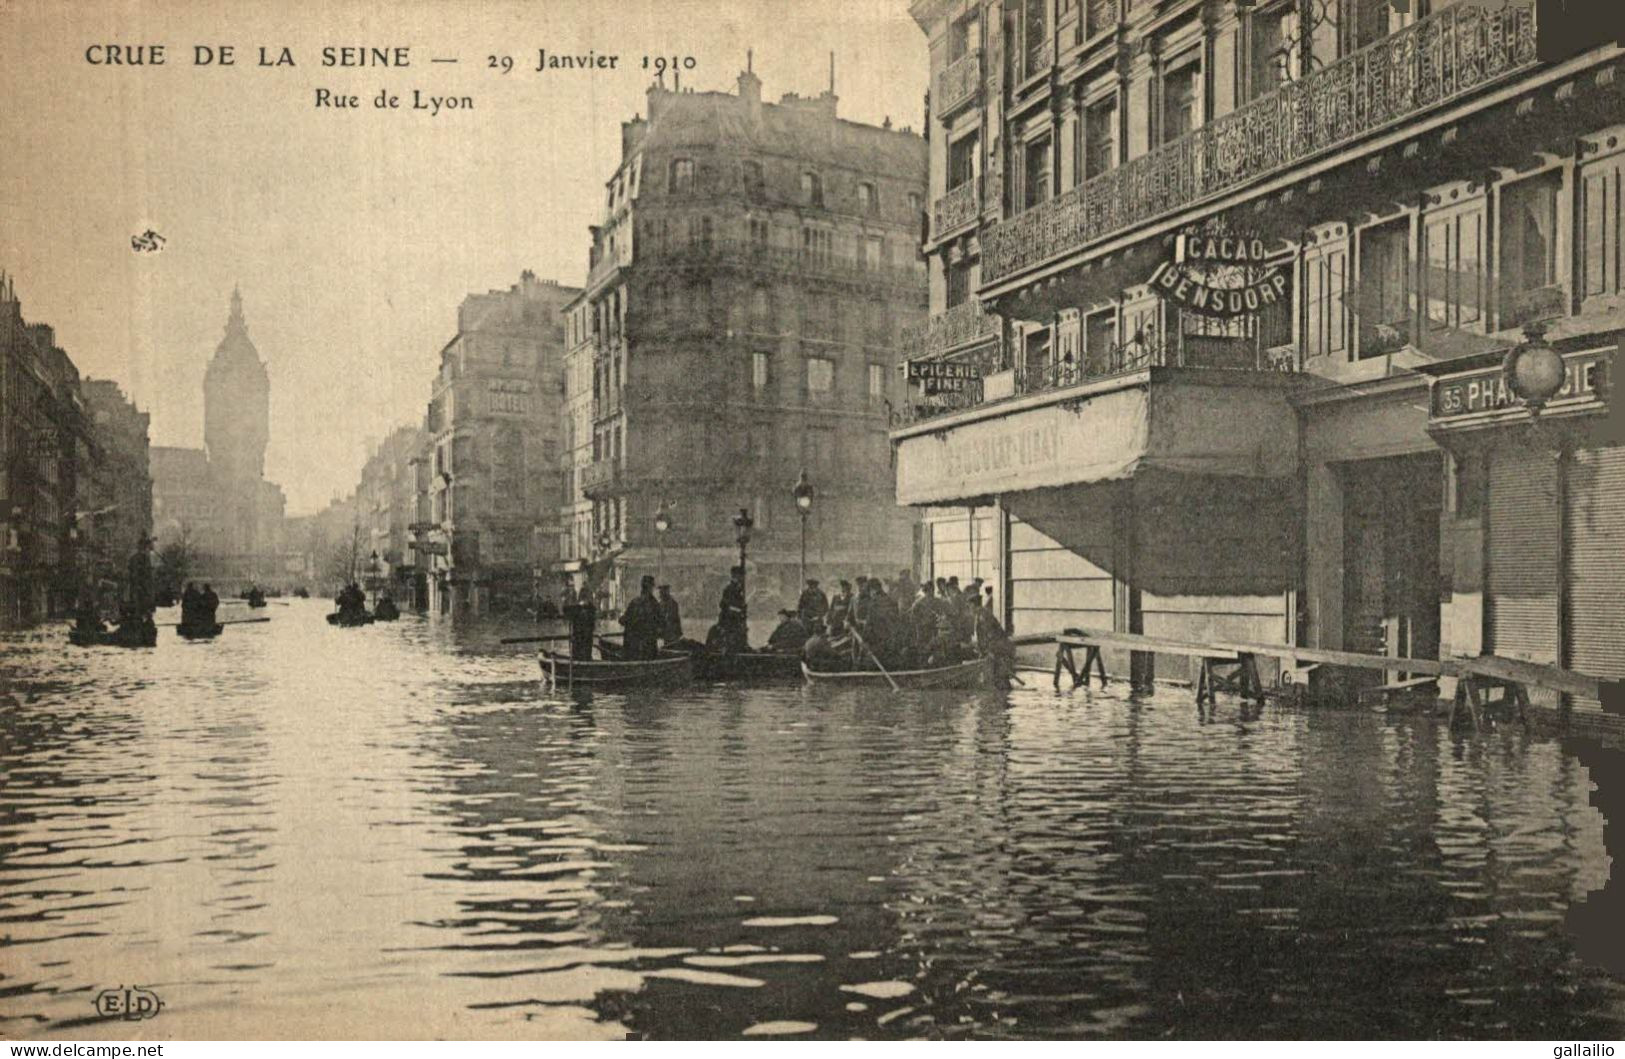 PARIS CRUE DE LA SEINE RUE DE LYON - Paris Flood, 1910